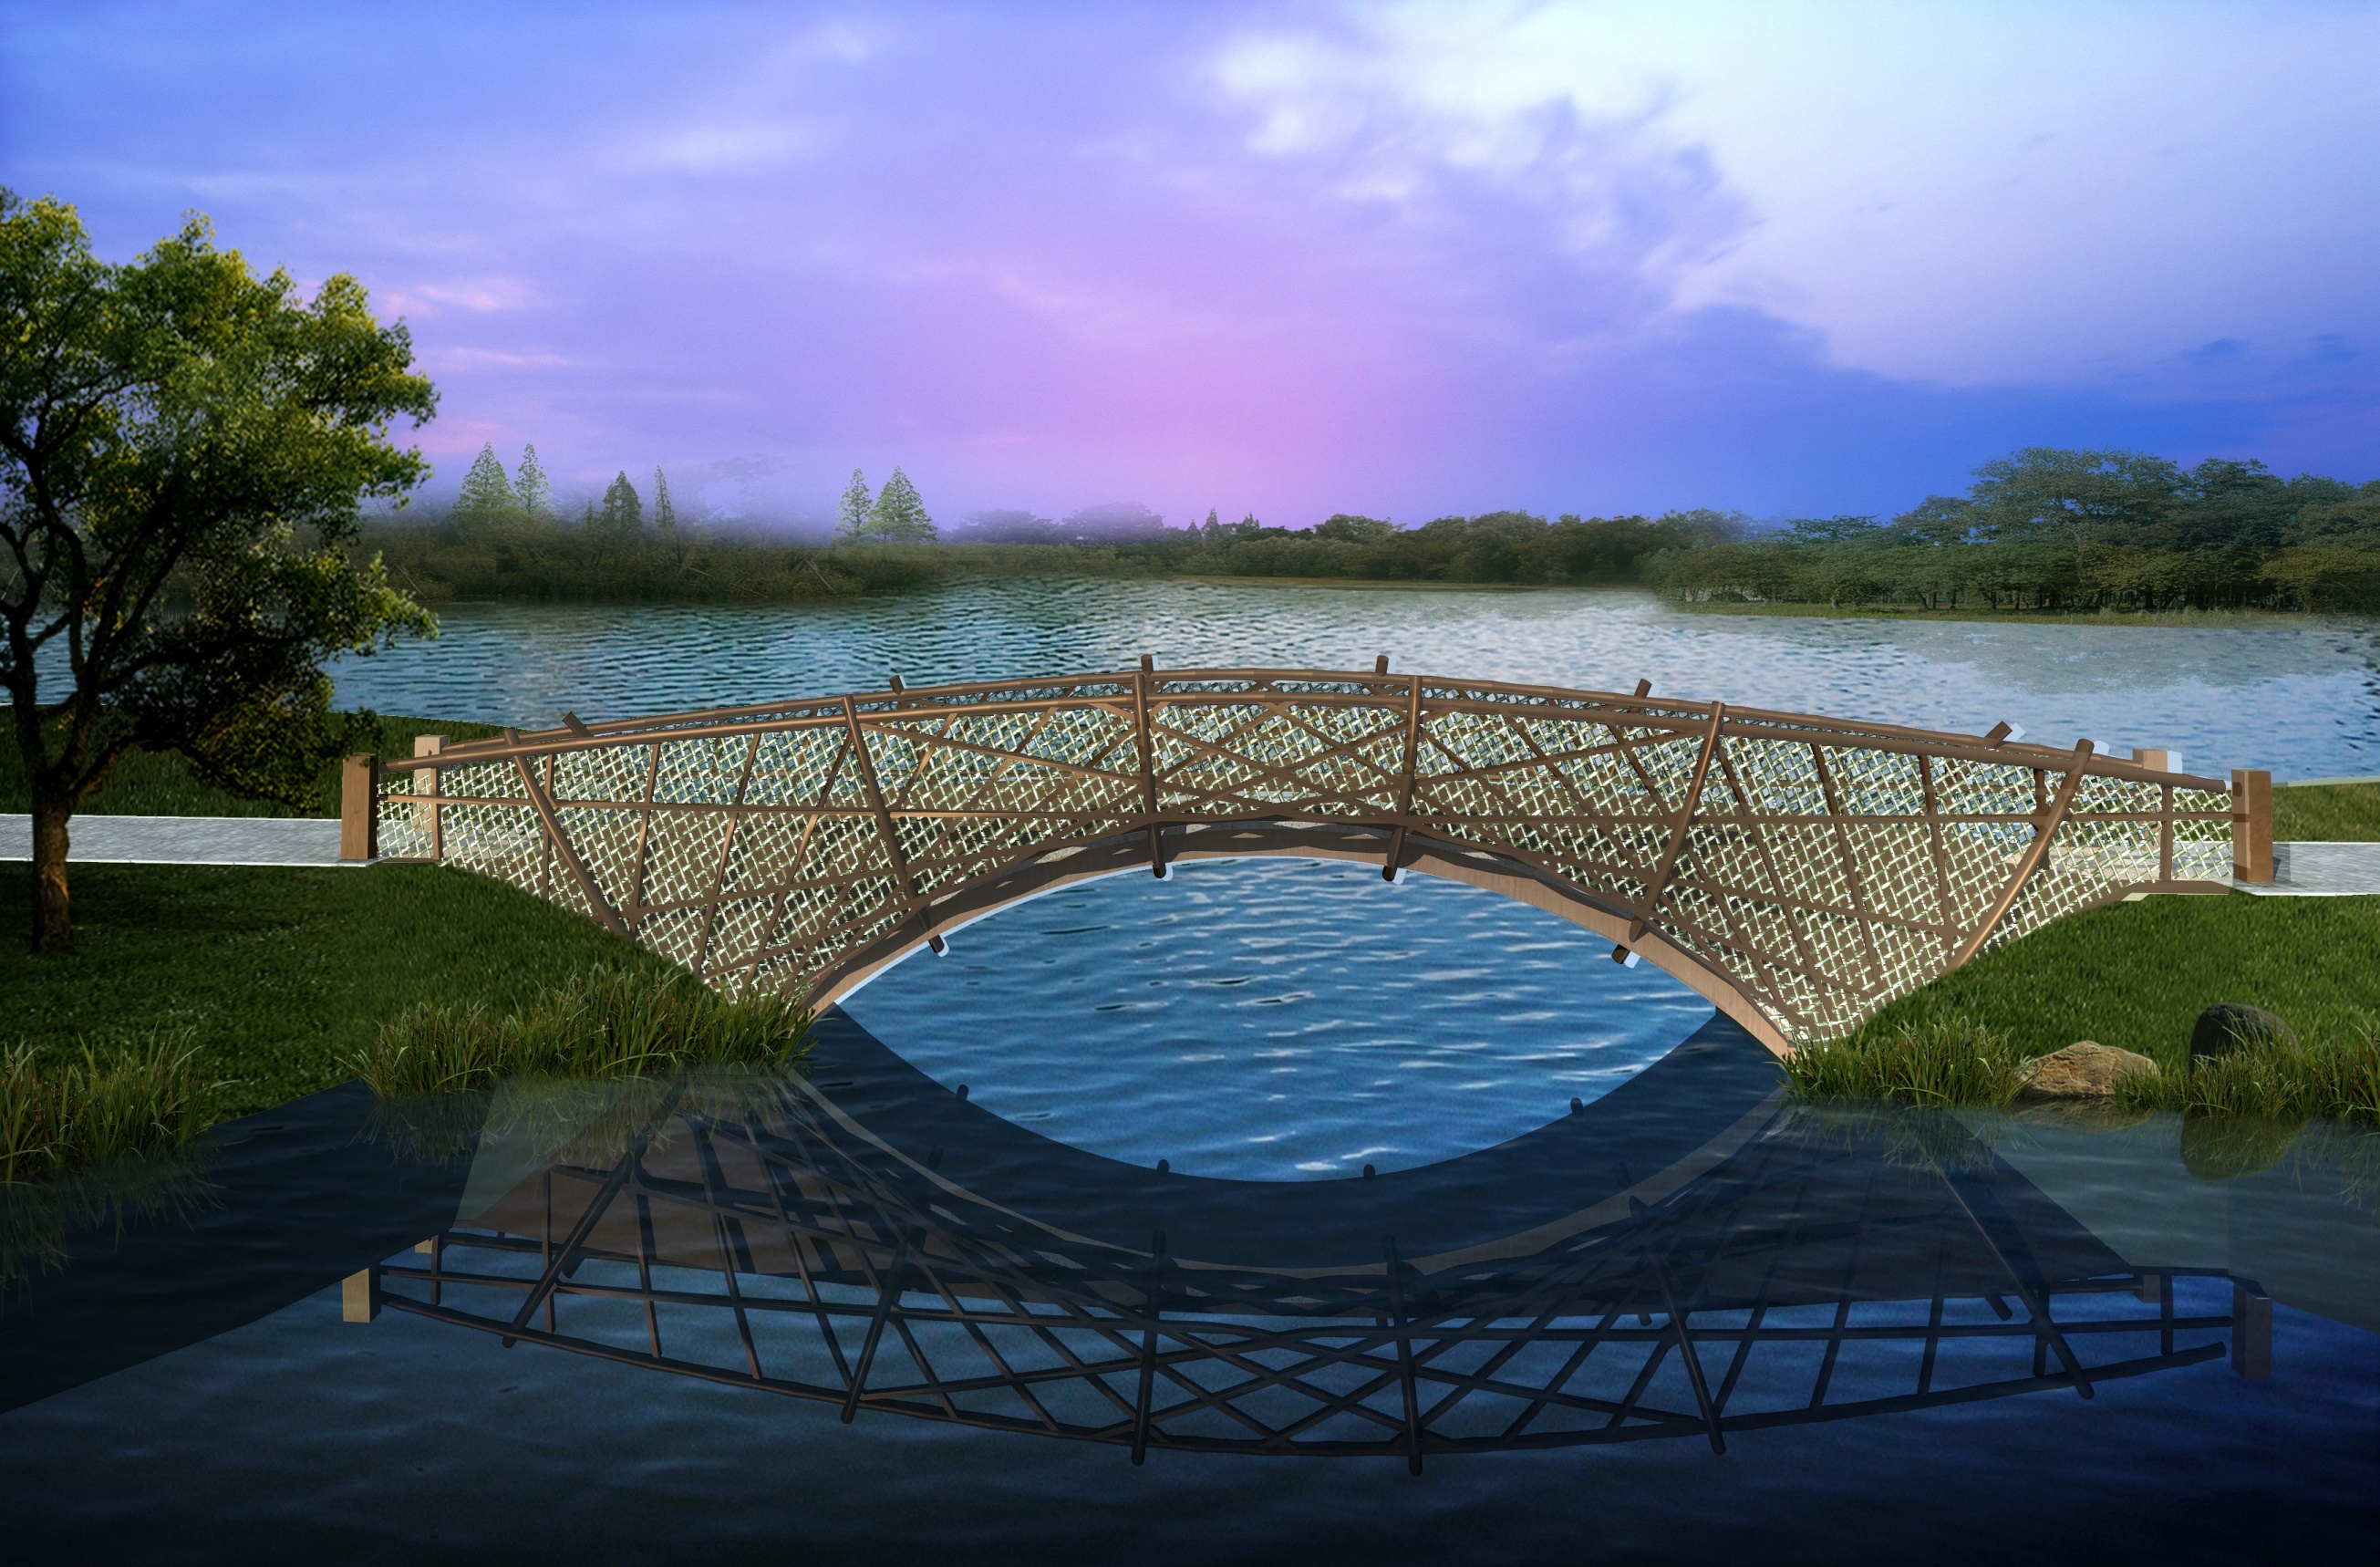 常见的桥梁材料分类:石桥,木桥,石木桥,竹木桥.